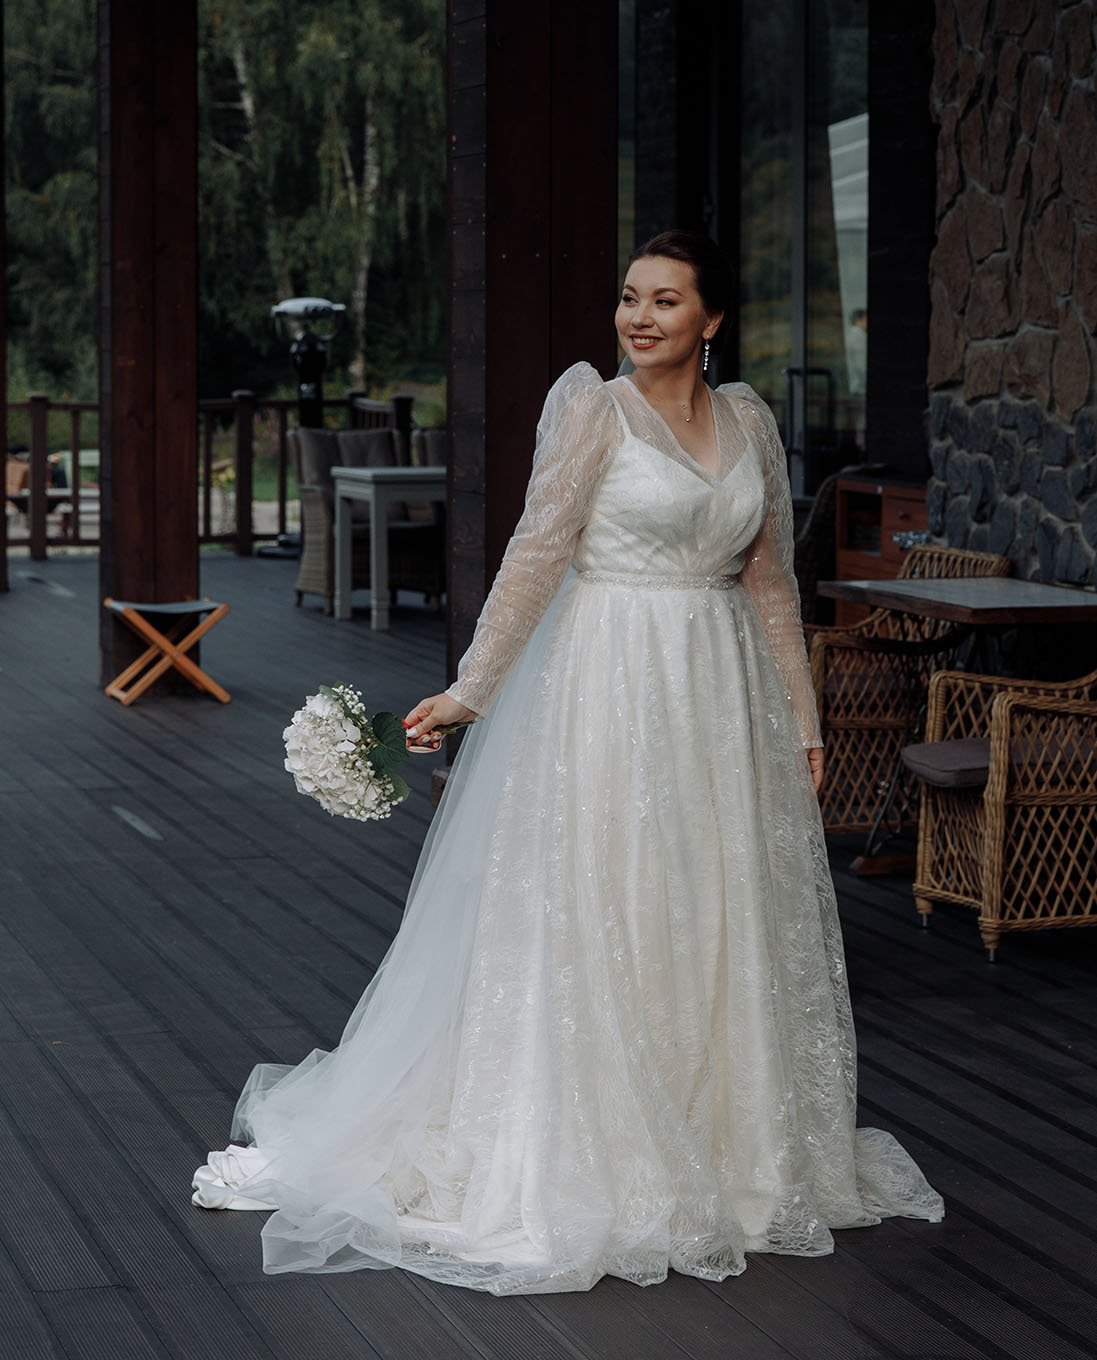 Сшить свадебное платье на заказ в СПб – качественно и недорого